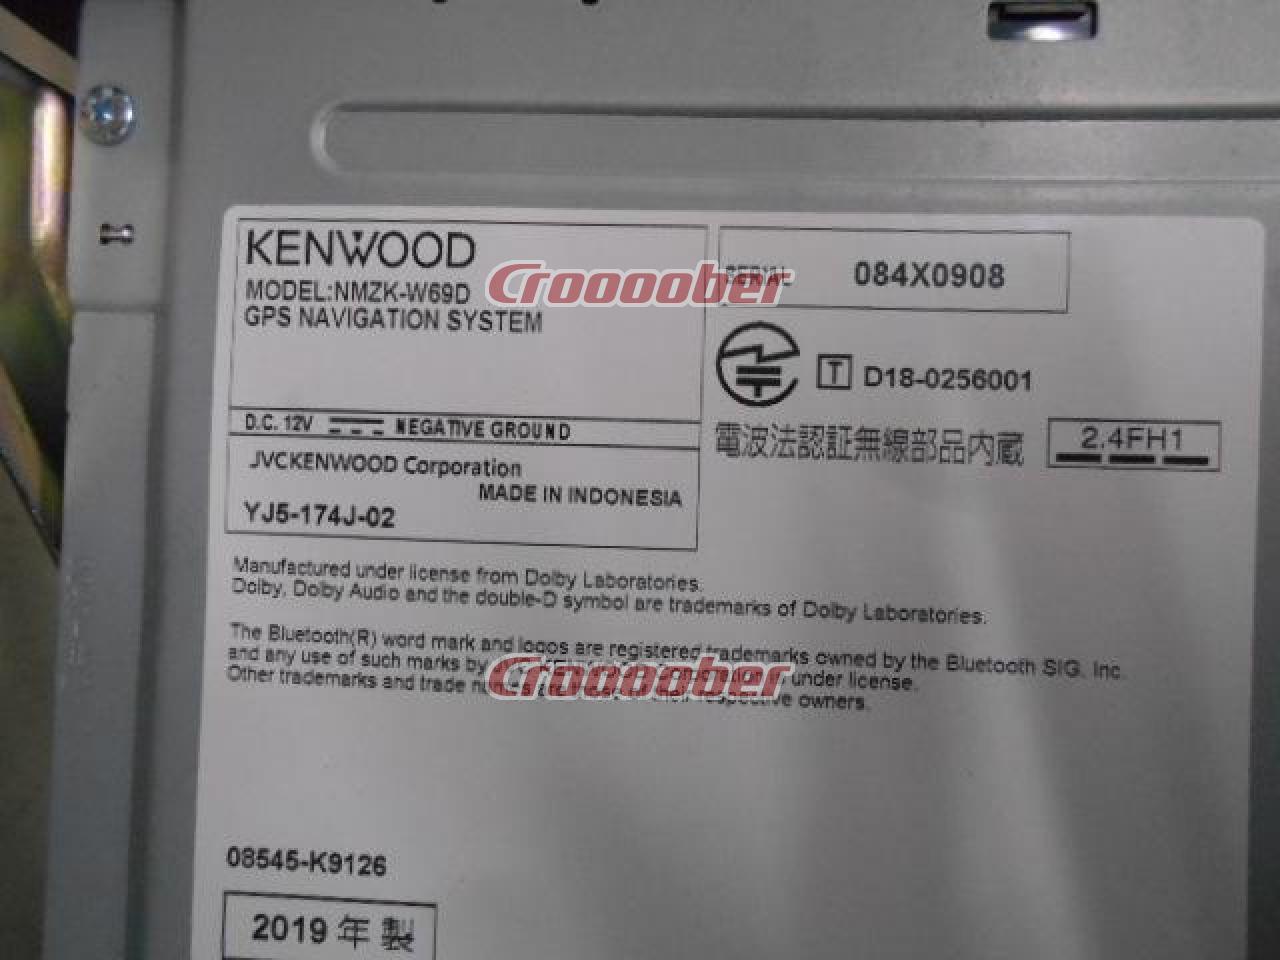 ダイハツ NMZK-W68D 地デジ/DVD/CD/SD/Bluetooth対応 | カーナビ(地 ...